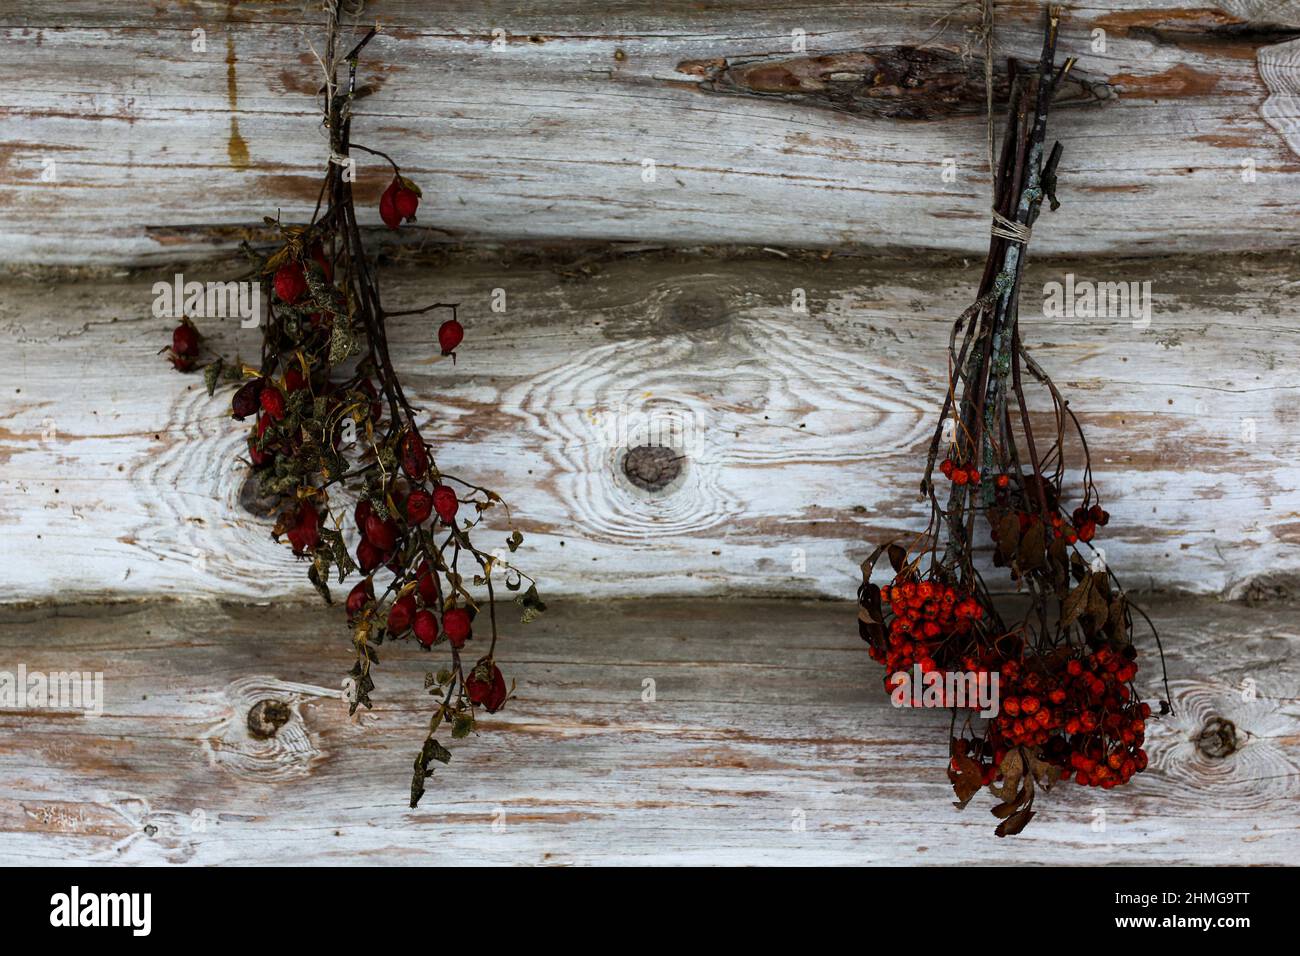 Eine alte Holzhütte und eine Scheune aus Rundholz. Zubereitung von Kräutern für Tee. Getrockneter Haufen Bergasche, wilde Rose. Stockfoto